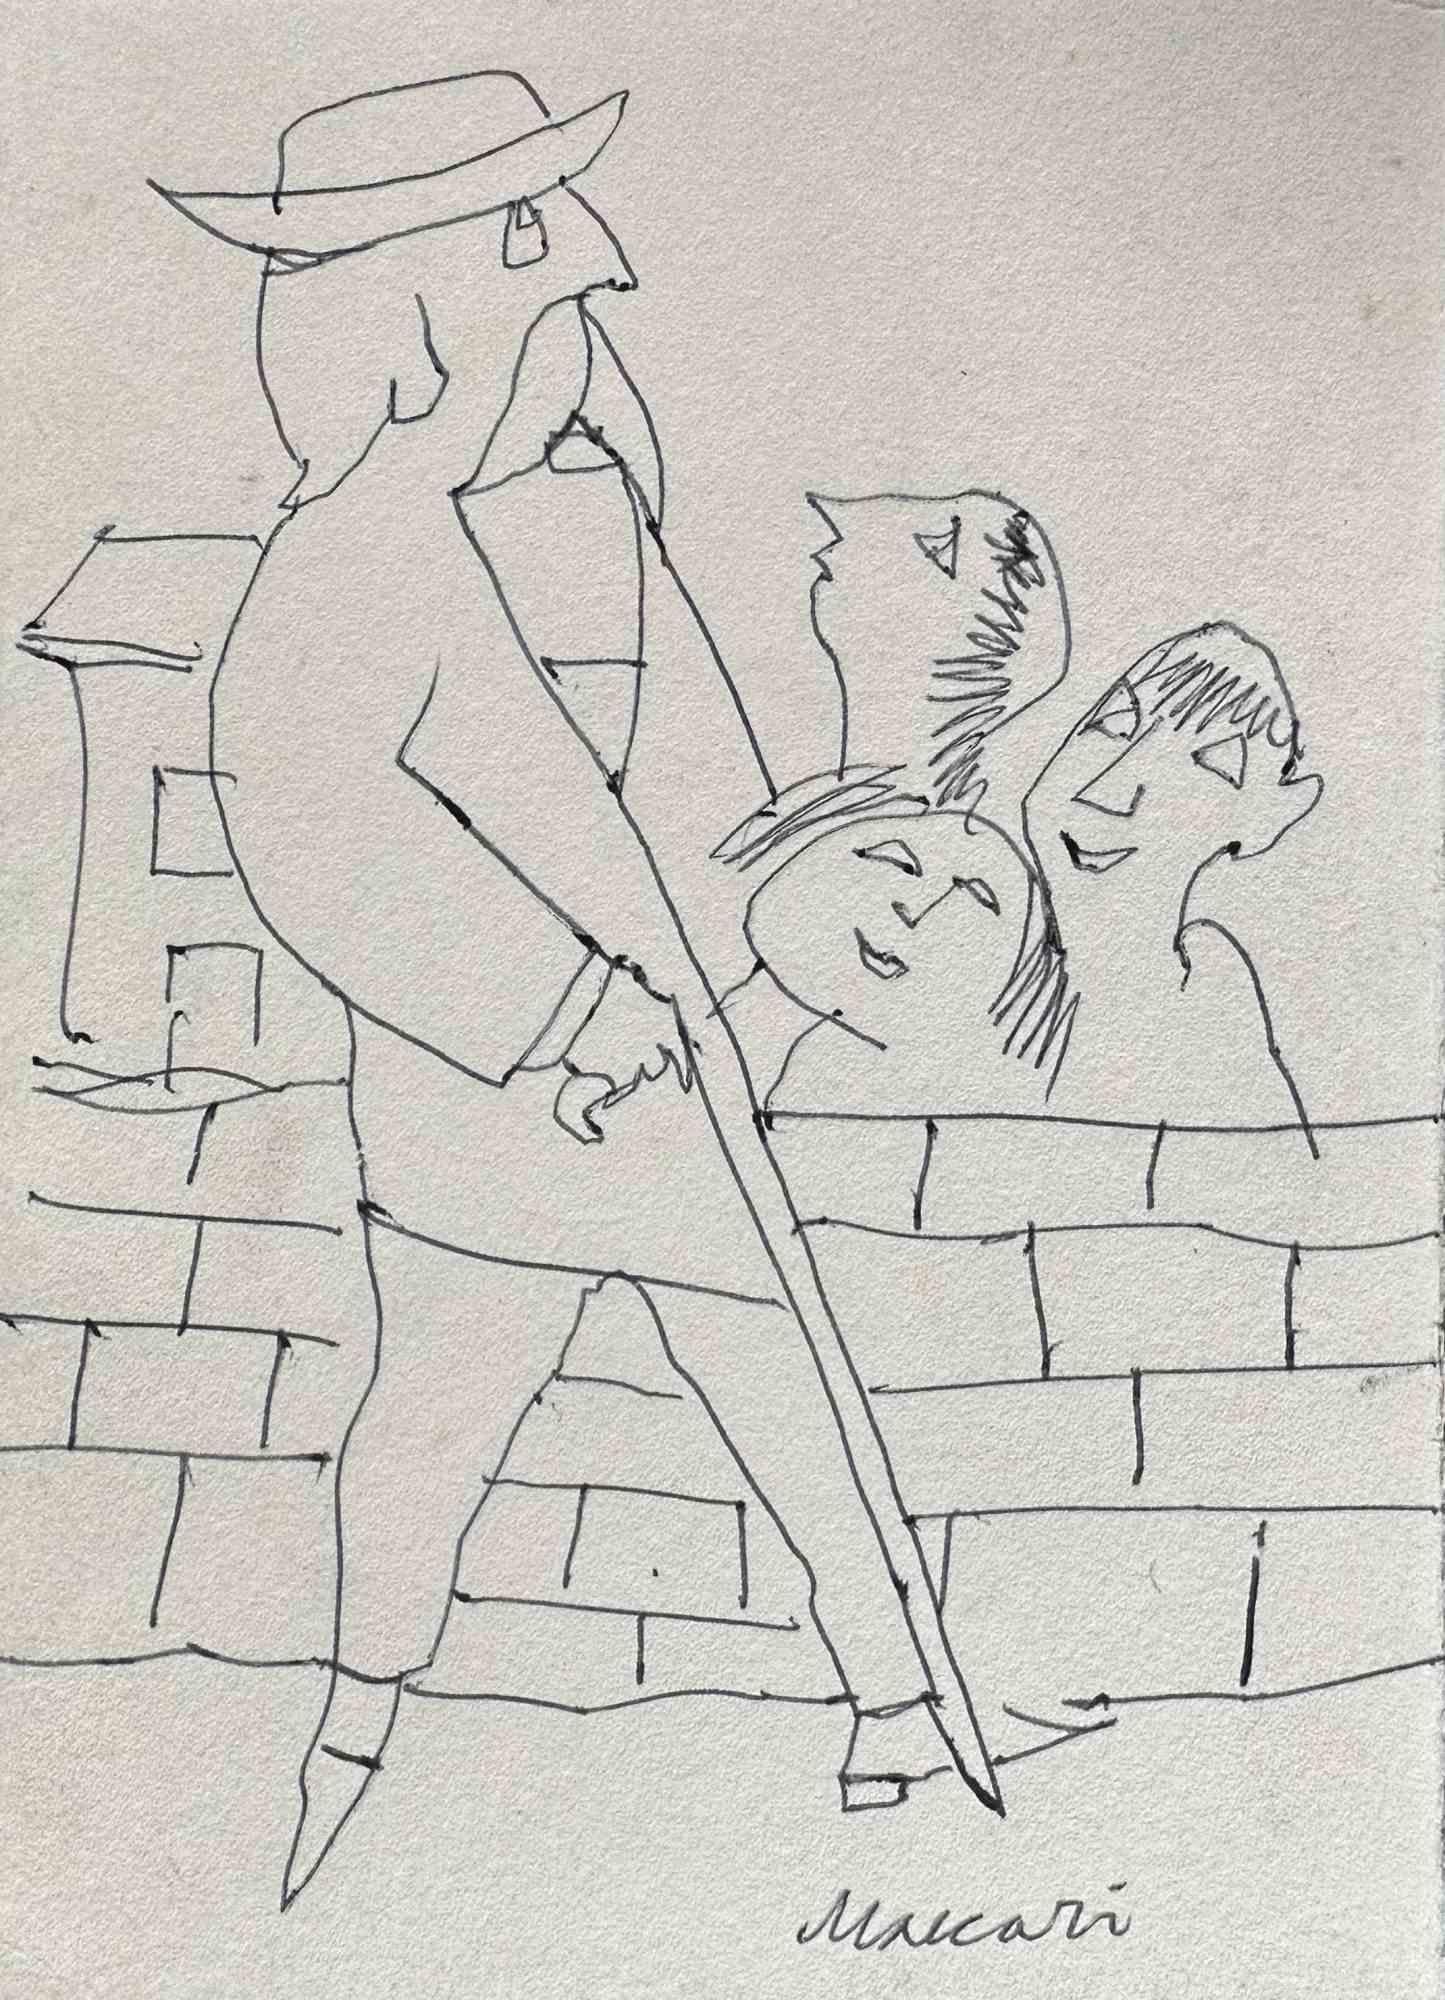 Walking Man ist eine Federzeichnung realisiert von Mino Maccari  (1924-1989) in den 1960er Jahren.

Handsigniert auf der Unterseite.

Gute Bedingungen.

Mino Maccari (Siena, 1924-Rom, 16. Juni 1989) war ein italienischer Schriftsteller, Maler,